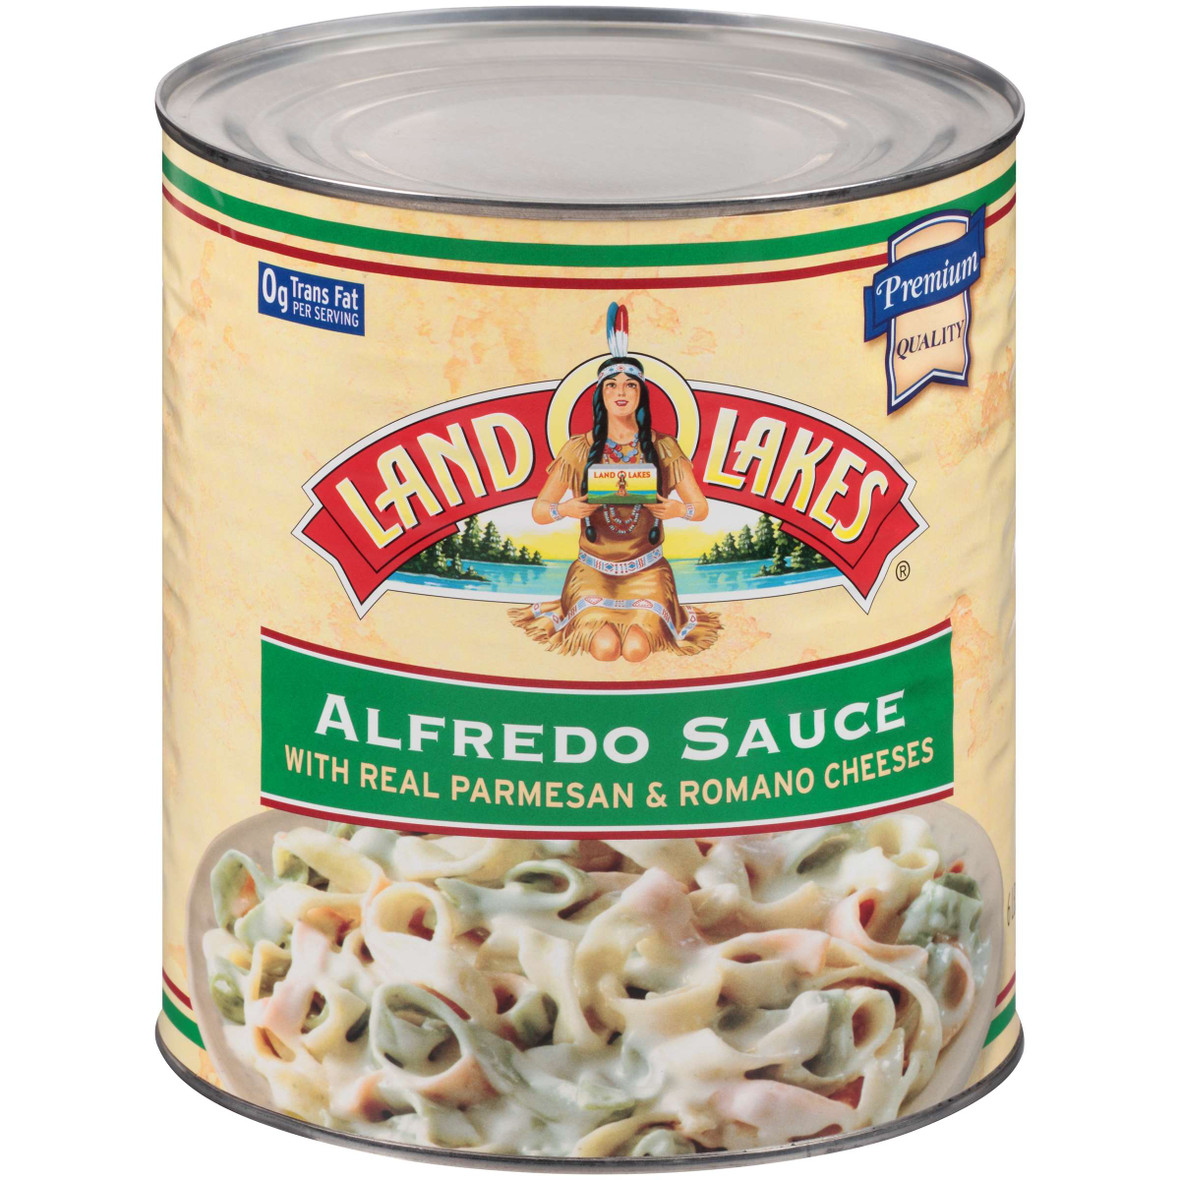 Land O Lakes Alfredo Sauce with real Parmesan & Romano Cheeses